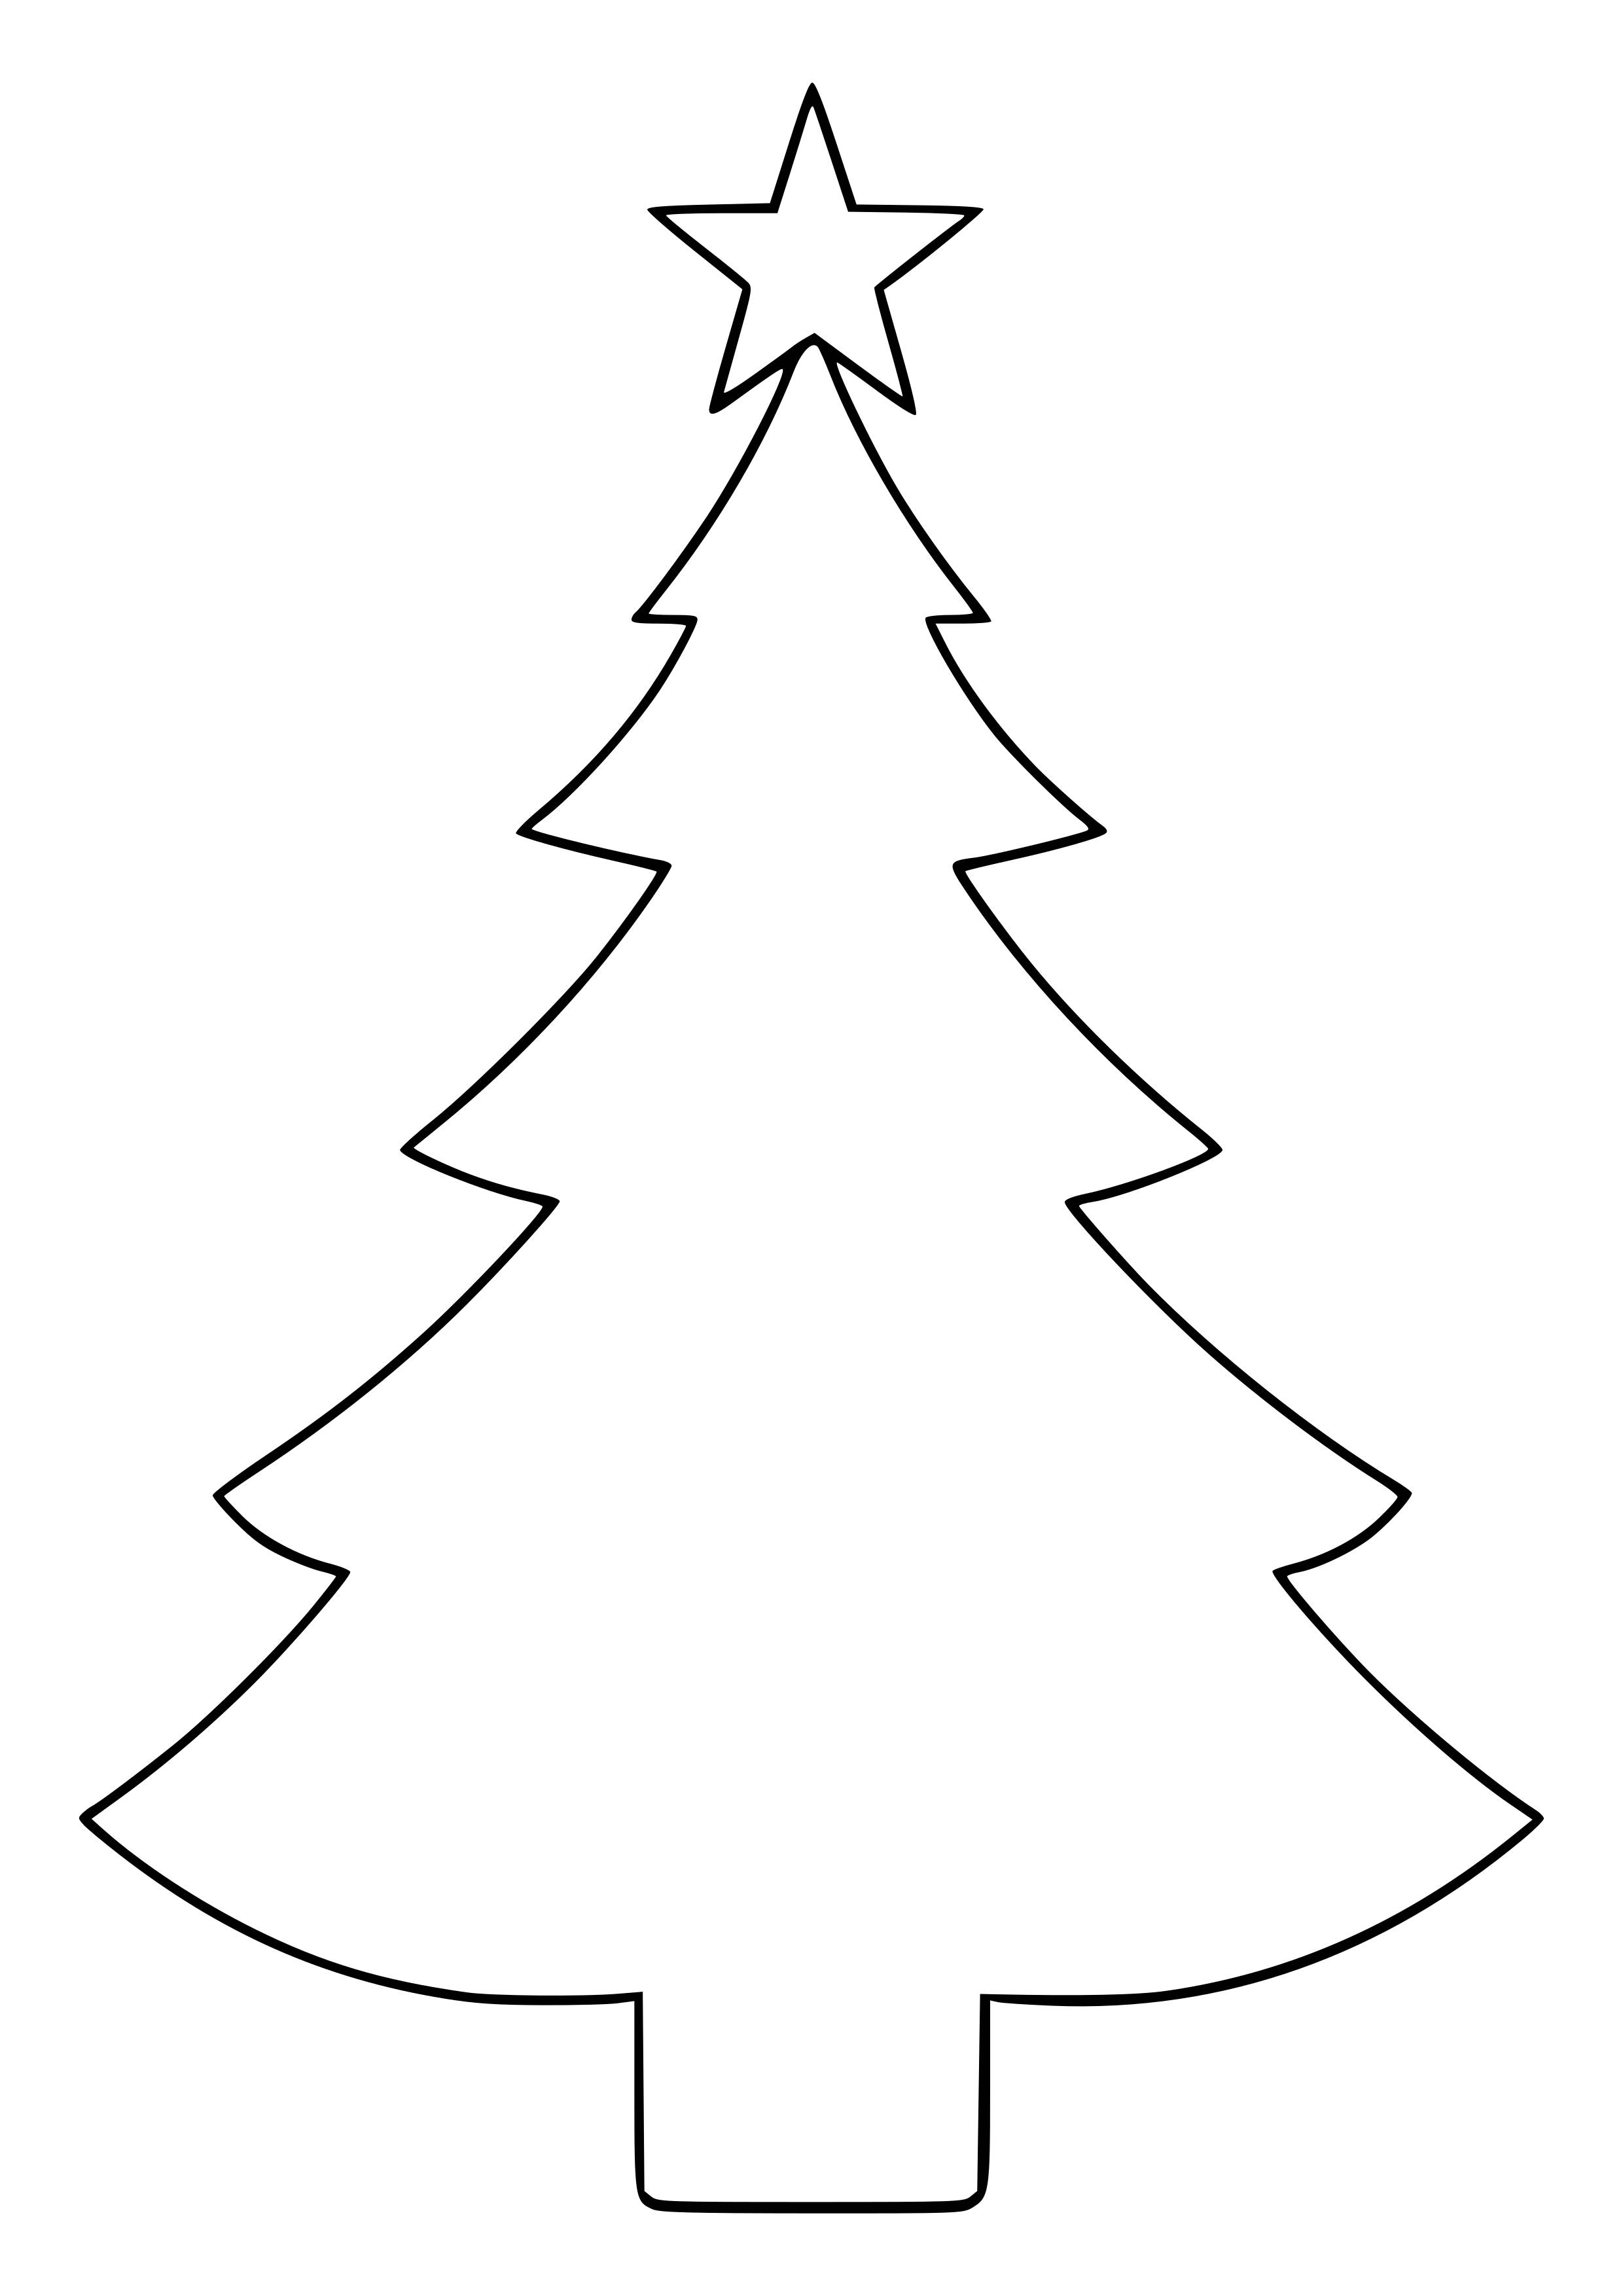 Великолепный шаблон раскраски рождественской елки